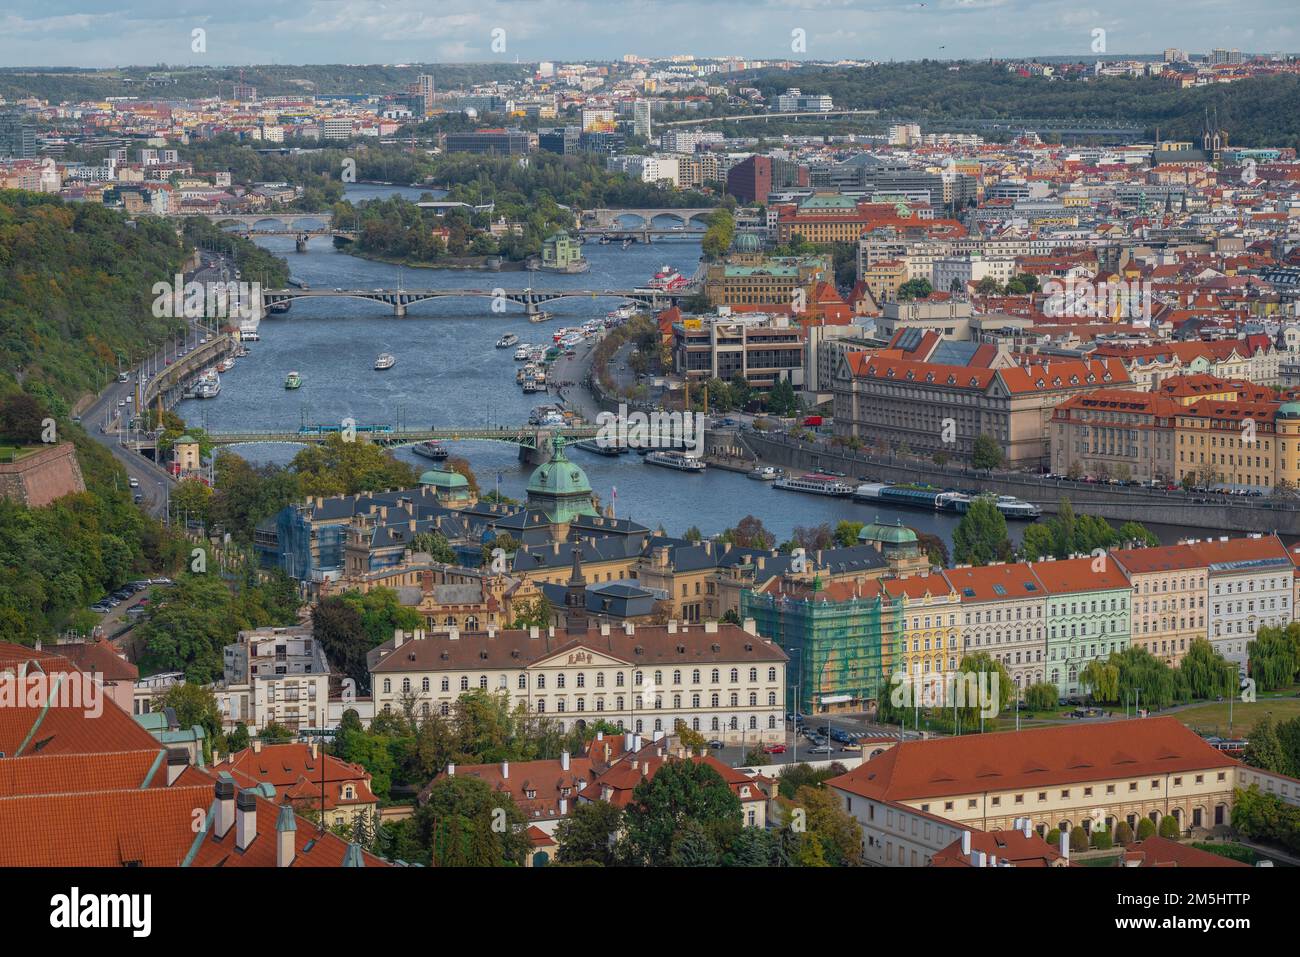 Vista aérea del río Moldava y los puentes de Praga - Praga, República Checa Foto de stock